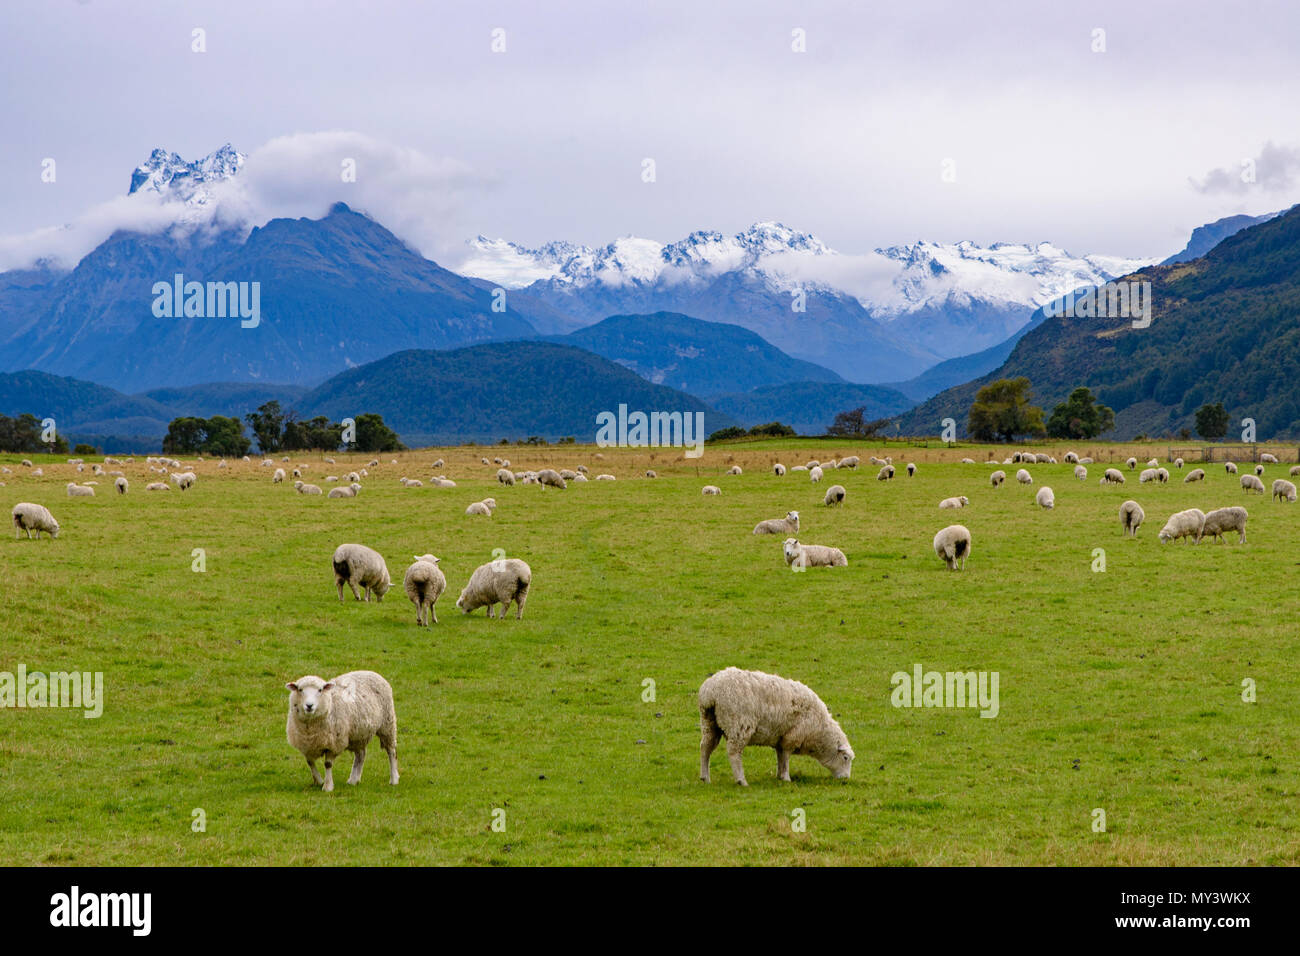 Ovejas en la granja, con montañas nevadas, Isla del Sur, Nueva Zelanda Foto de stock